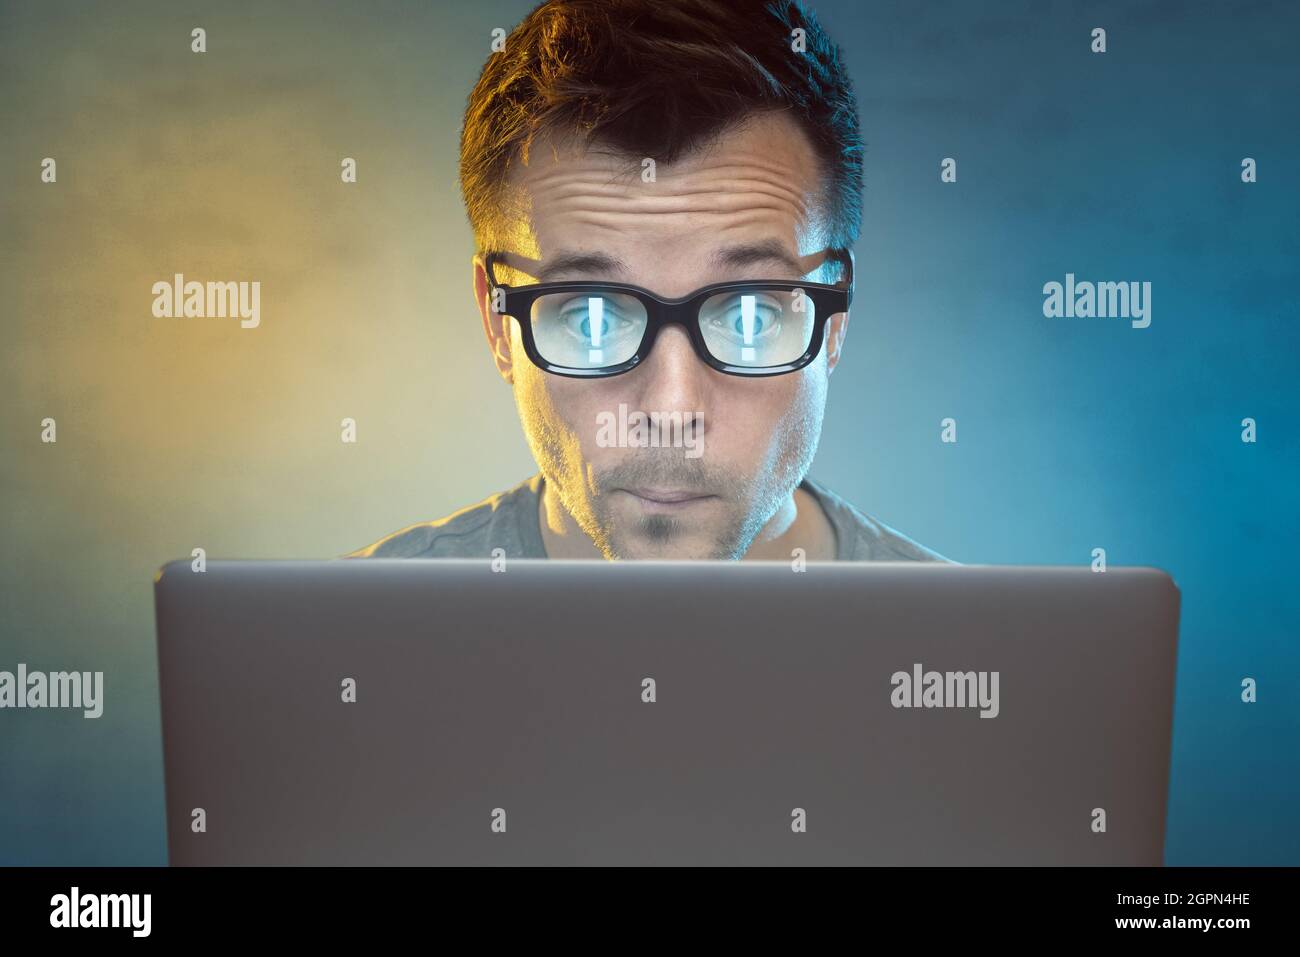 Uomo di fronte ad un computer con punti esclamativi che riflettono nei suoi occhiali Foto Stock